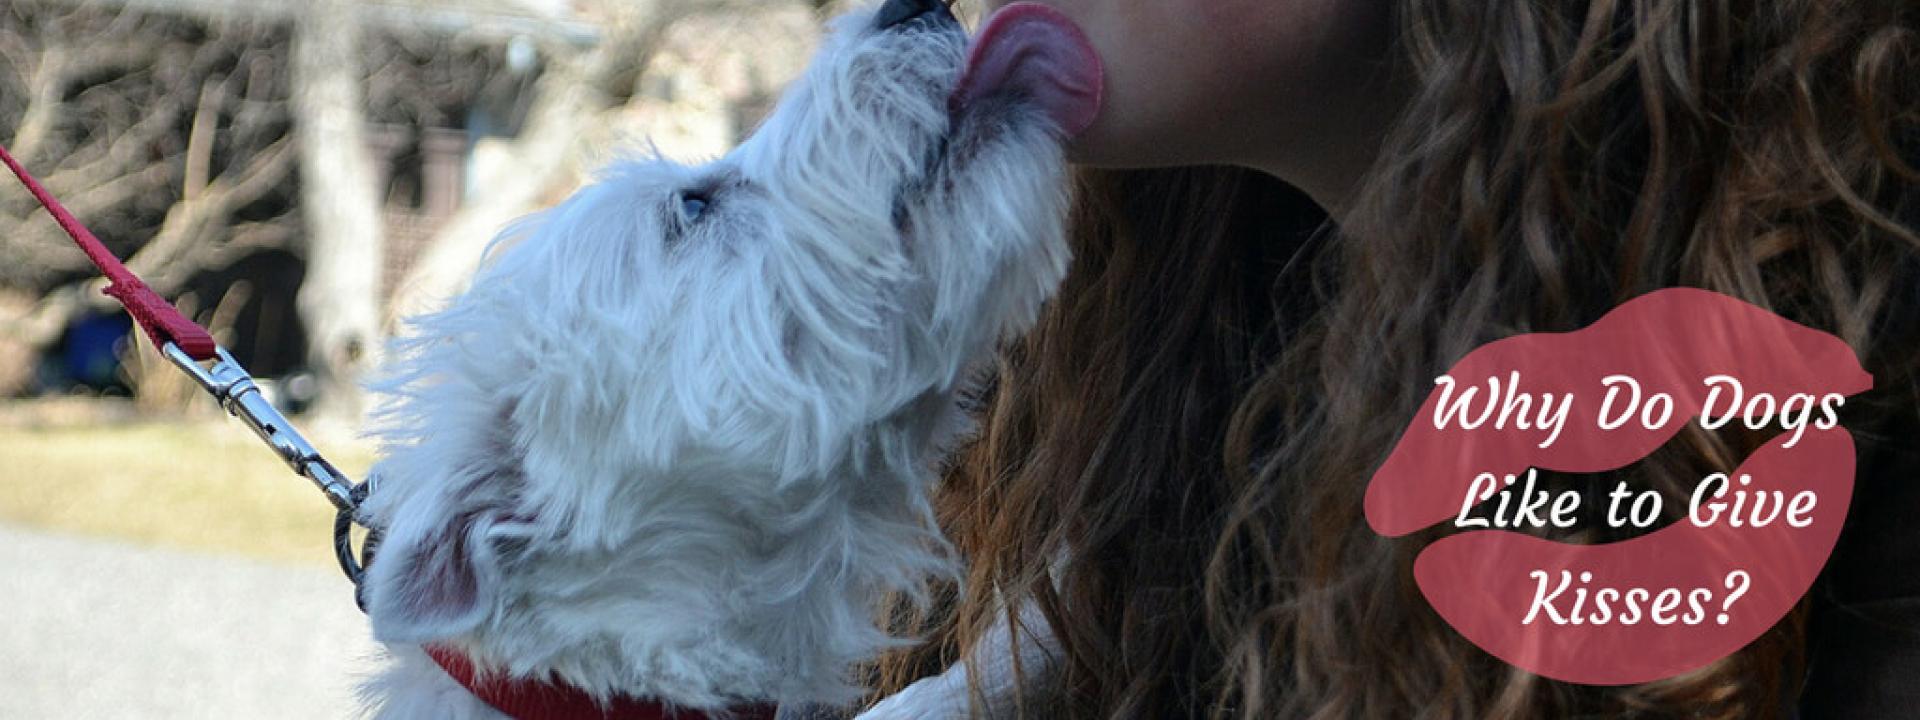 dog-kisses-Blog-Header.jpg